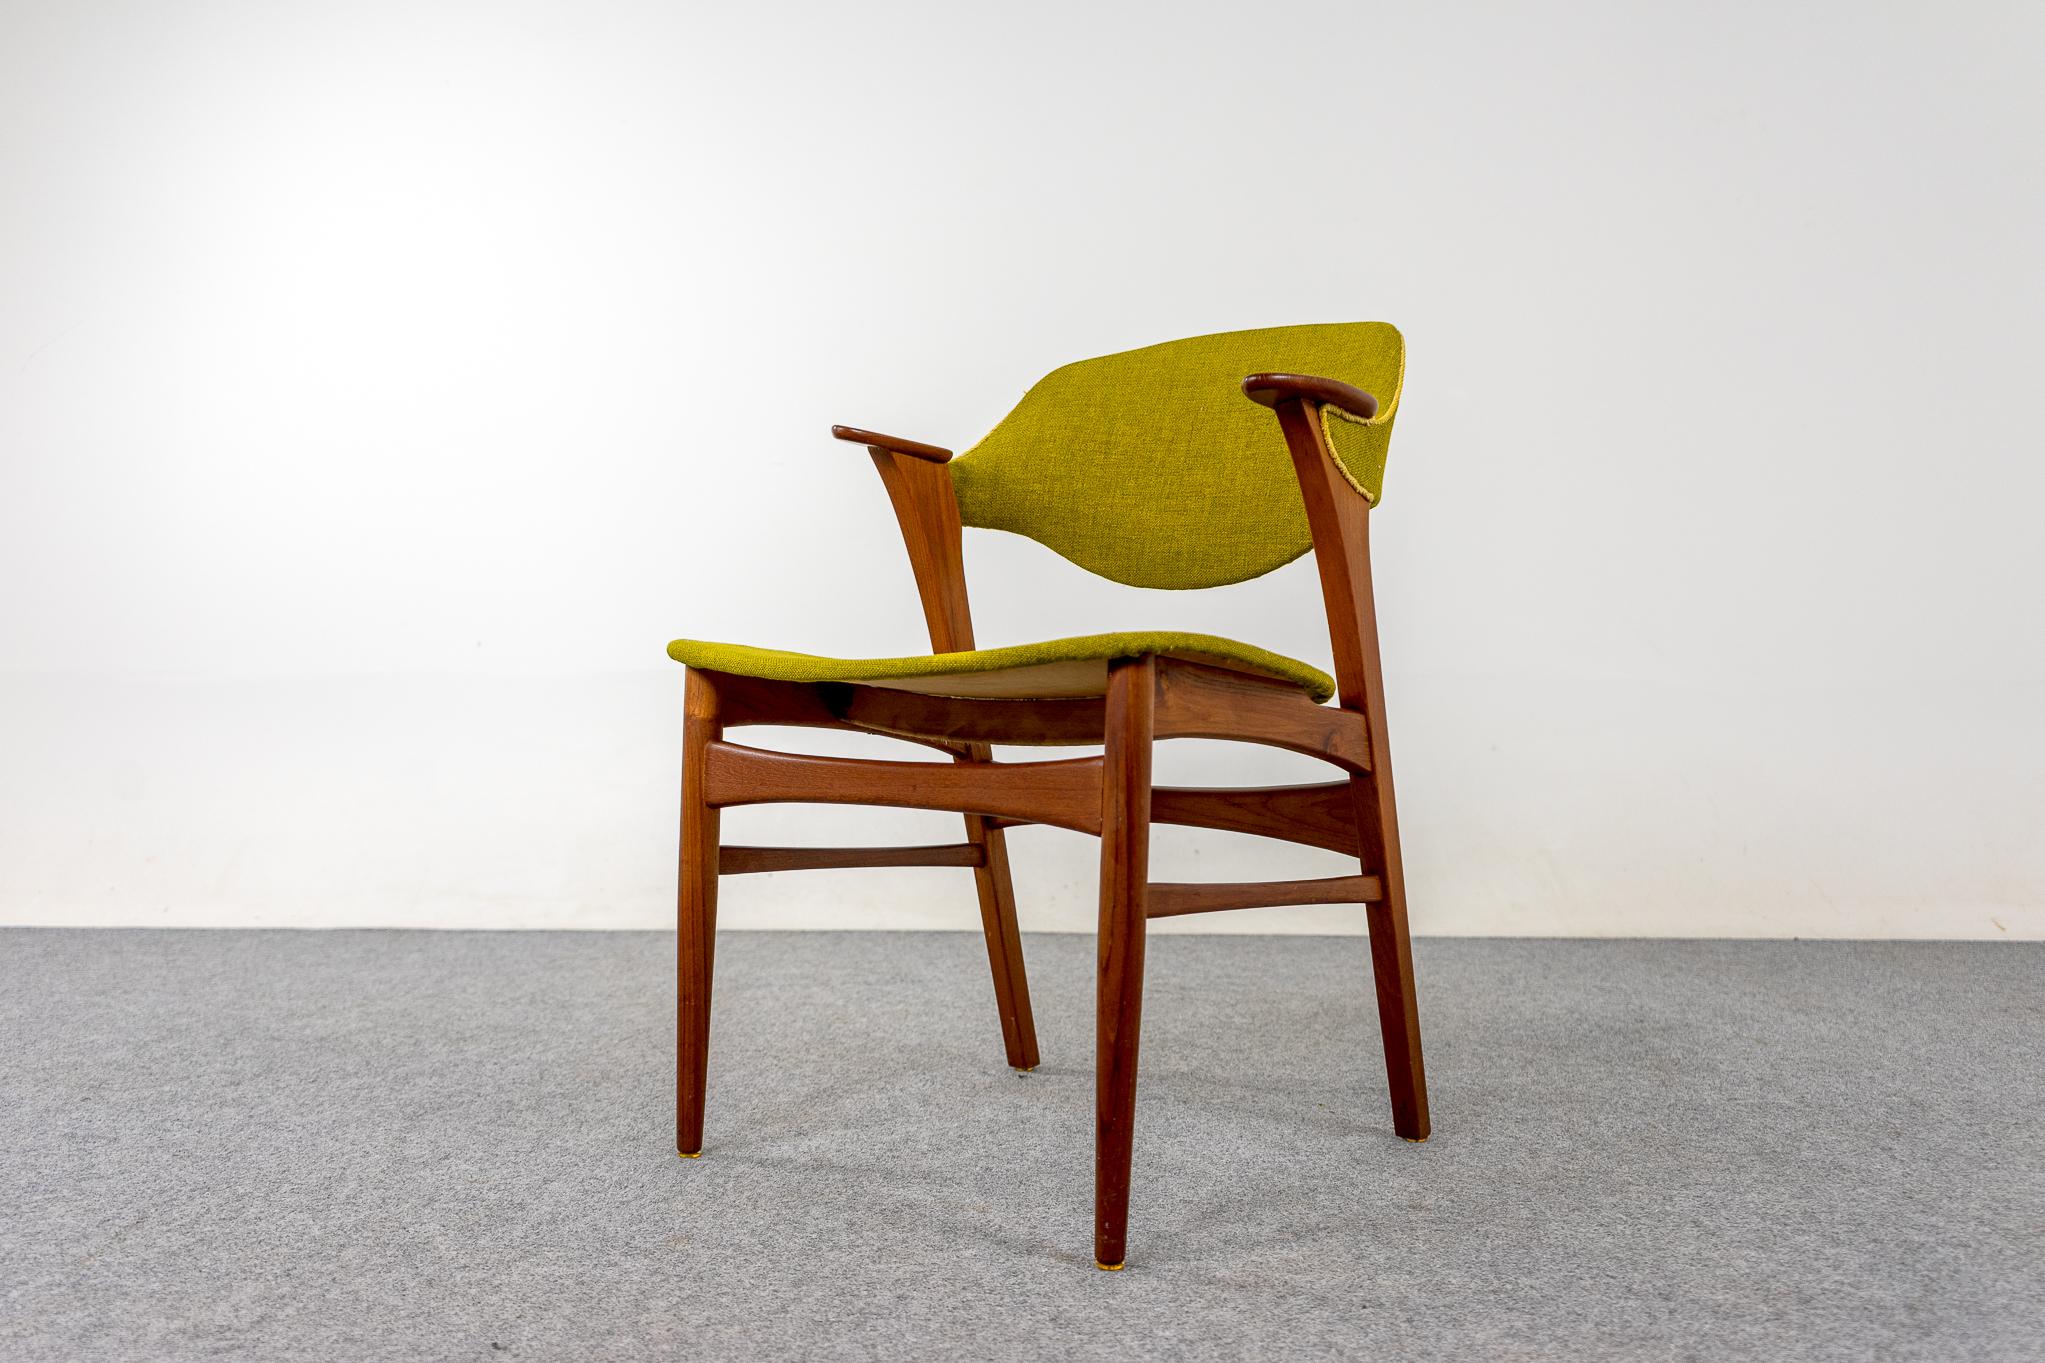 Fauteuil danois en teck, circa 1960. Structure élégante avec accoudoirs arrondis, parfaitement adaptée à un bureau ou à une chaise d'appoint. Le cadre magnifiquement sculpté offre un confort sans empreinte imposante. La sellerie d'origine est d'une